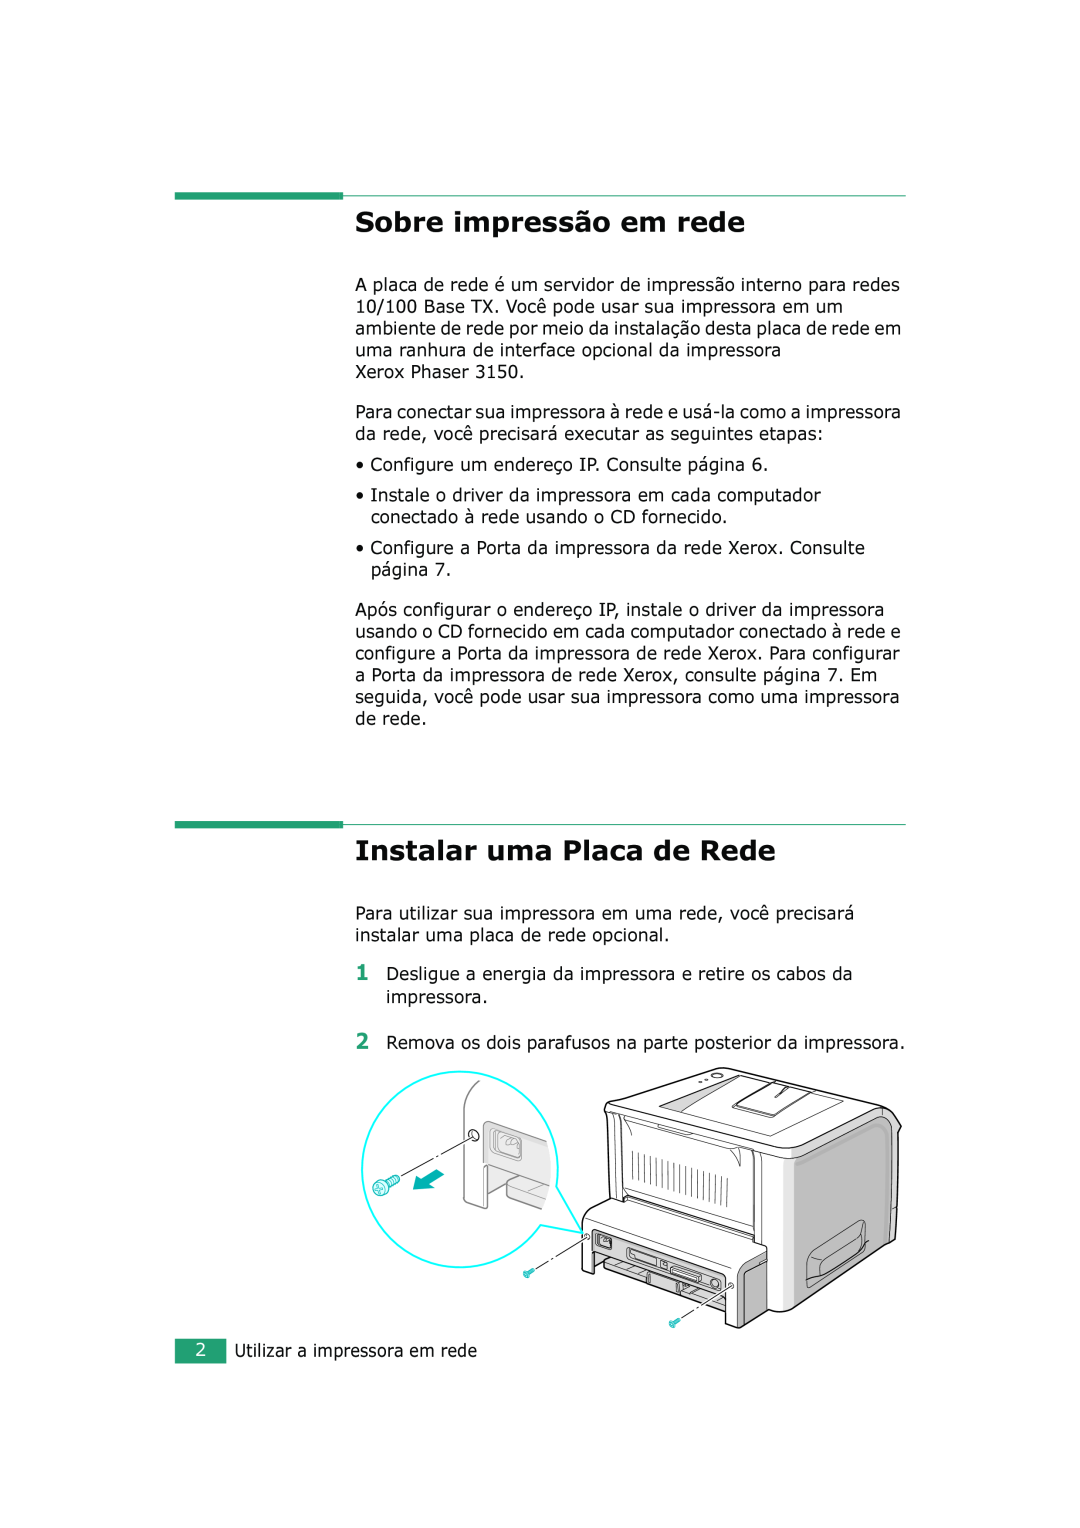 Xerox 3150 manual Sobre impressão em rede, Instalar uma Placa de Rede 